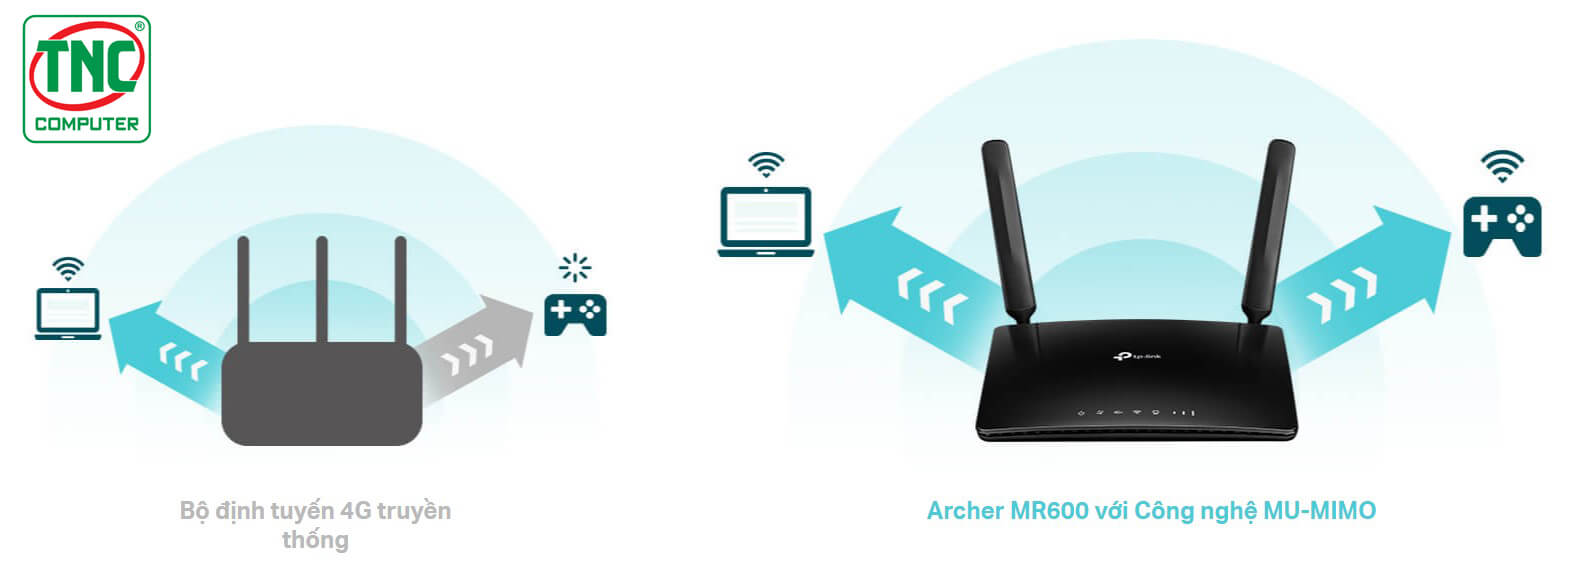 Router 4G+ TP-Link Archer MR600 sở hữu công nghệ MU-MIMO tiên tiến